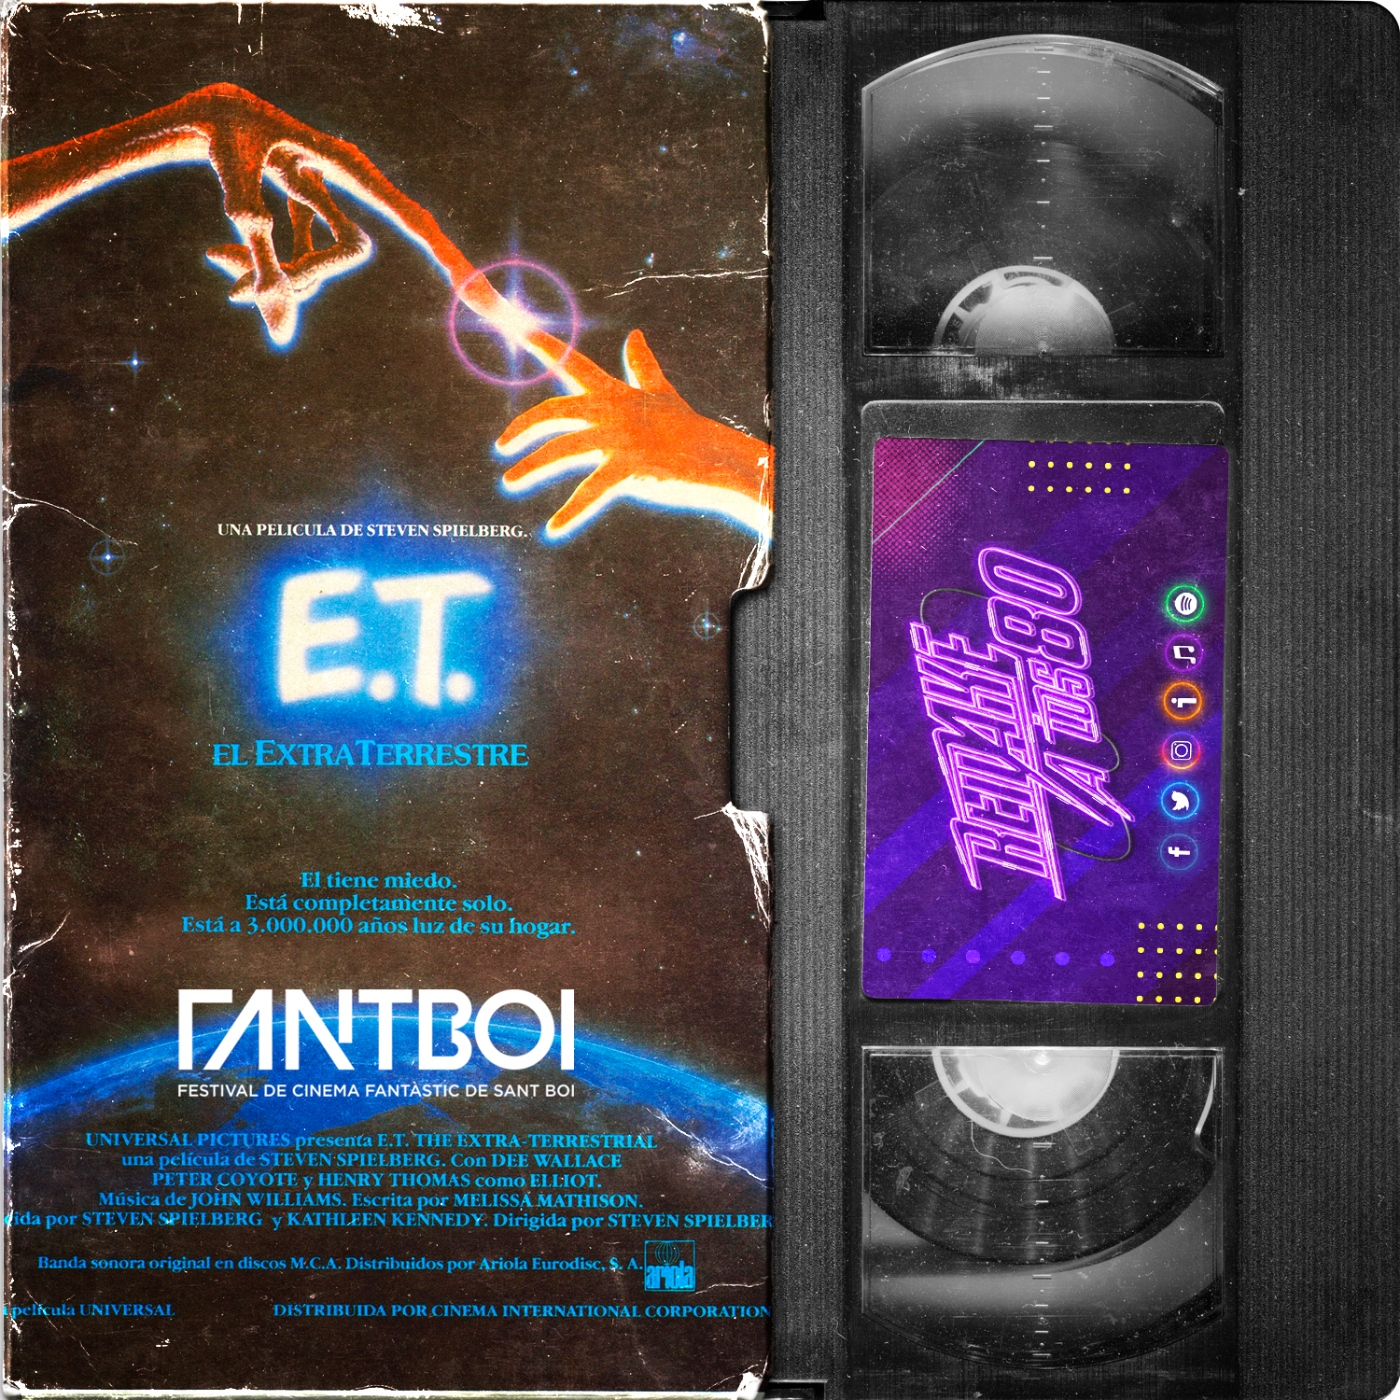 07x12 Remake a los 80, E.T., el extraterrestre (Steven Spielberg, 1982) desde FANTBOI